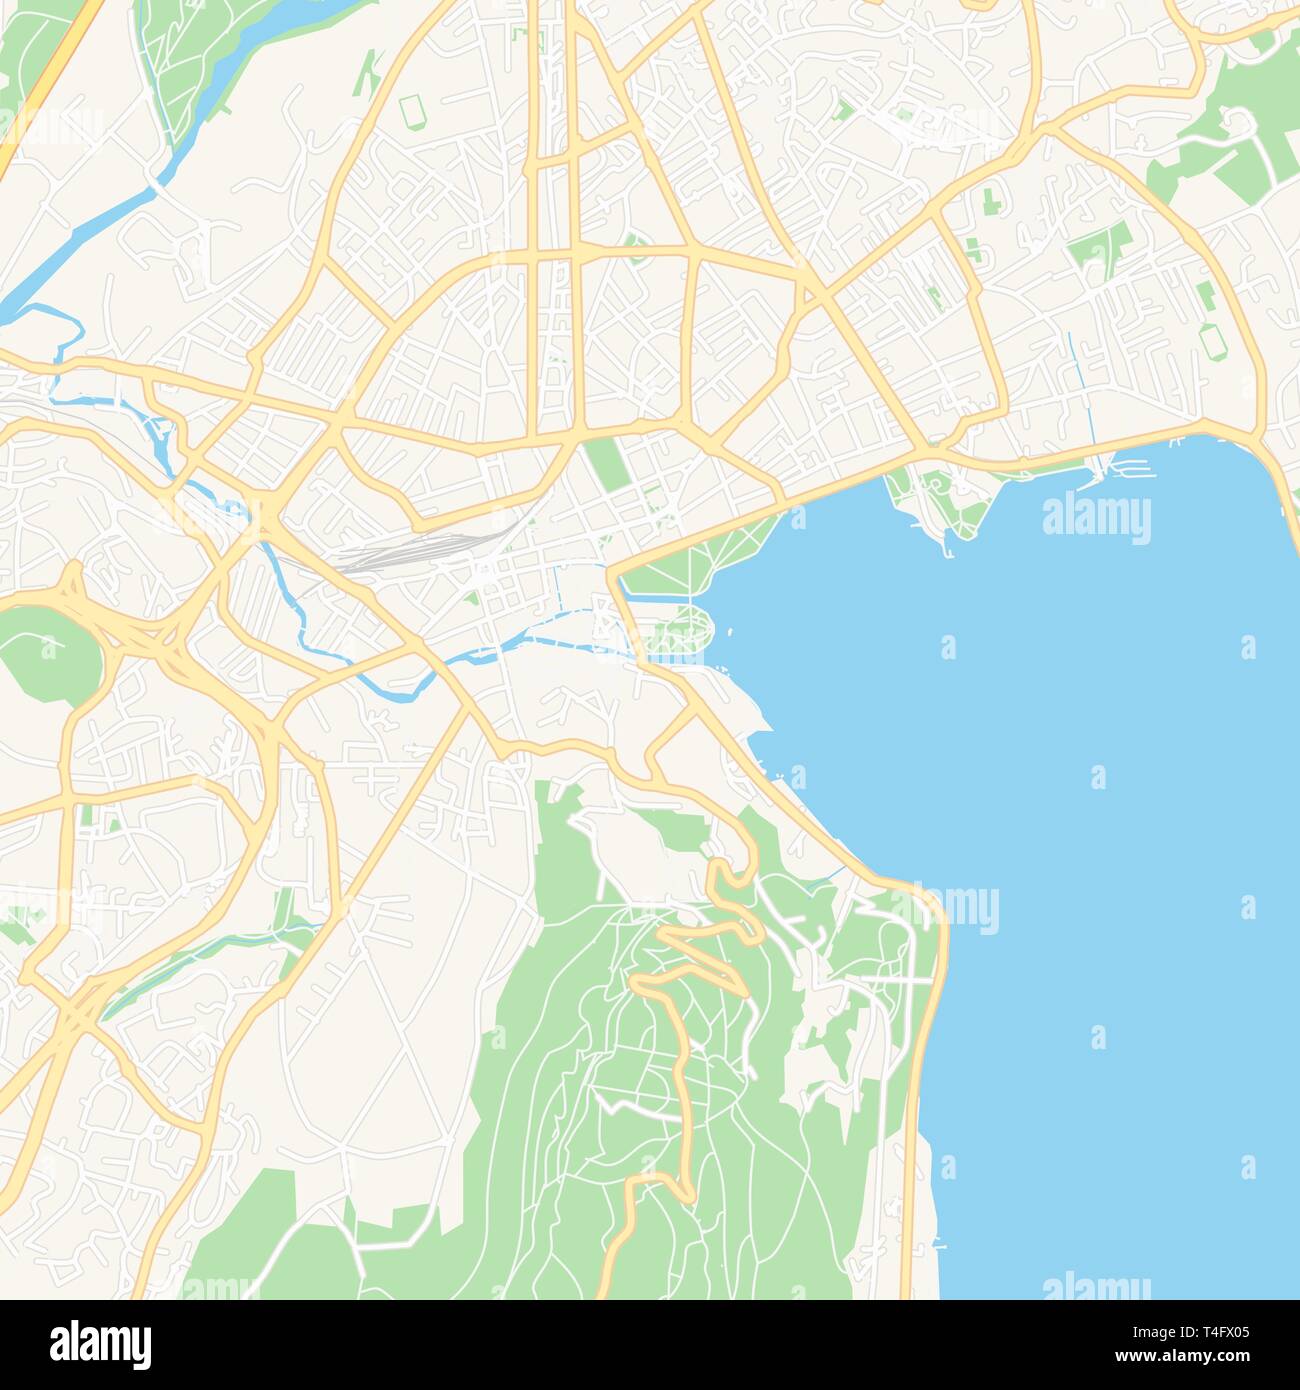 Druckbare Karte von Annecy, Frankreich mit Haupt- und Nebenstraßen und größere Bahnen. Diese Karte ist sorgfältig für das Routing und die Platzierung von einzelnen d ausgelegt Stock Vektor